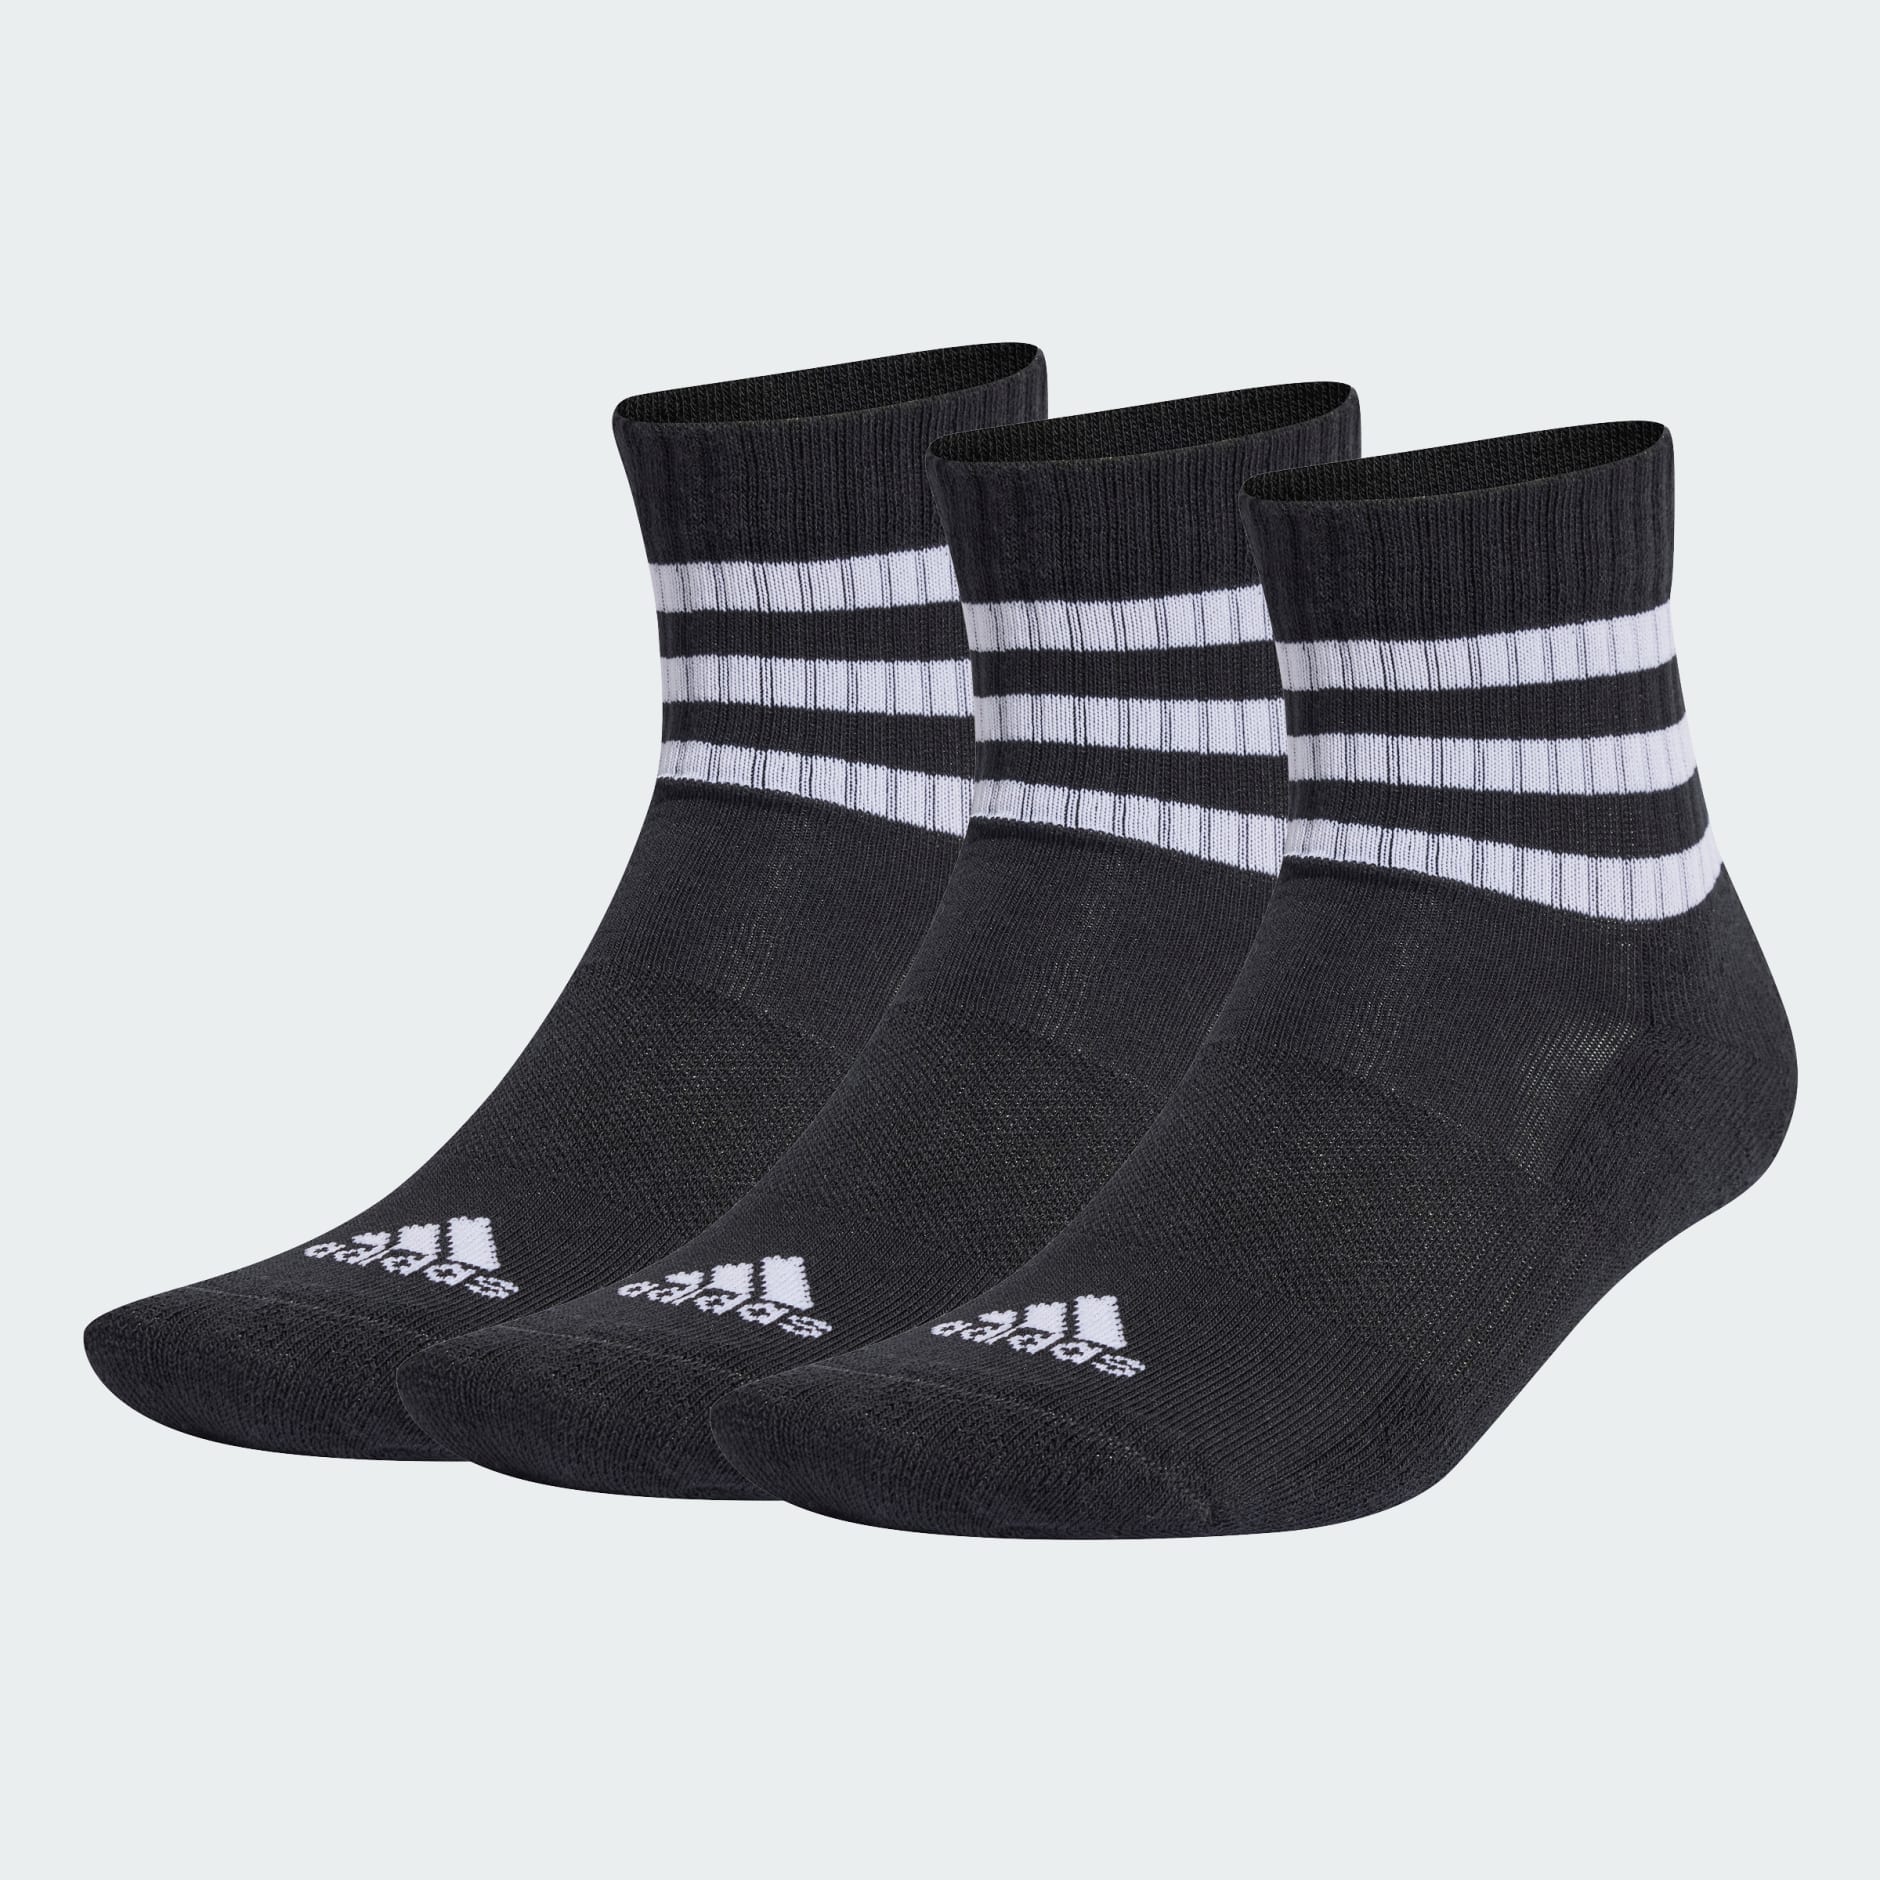 Accessories - 3-Stripes Cushioned Sportswear Mid-Cut Socks 3 Pairs ...